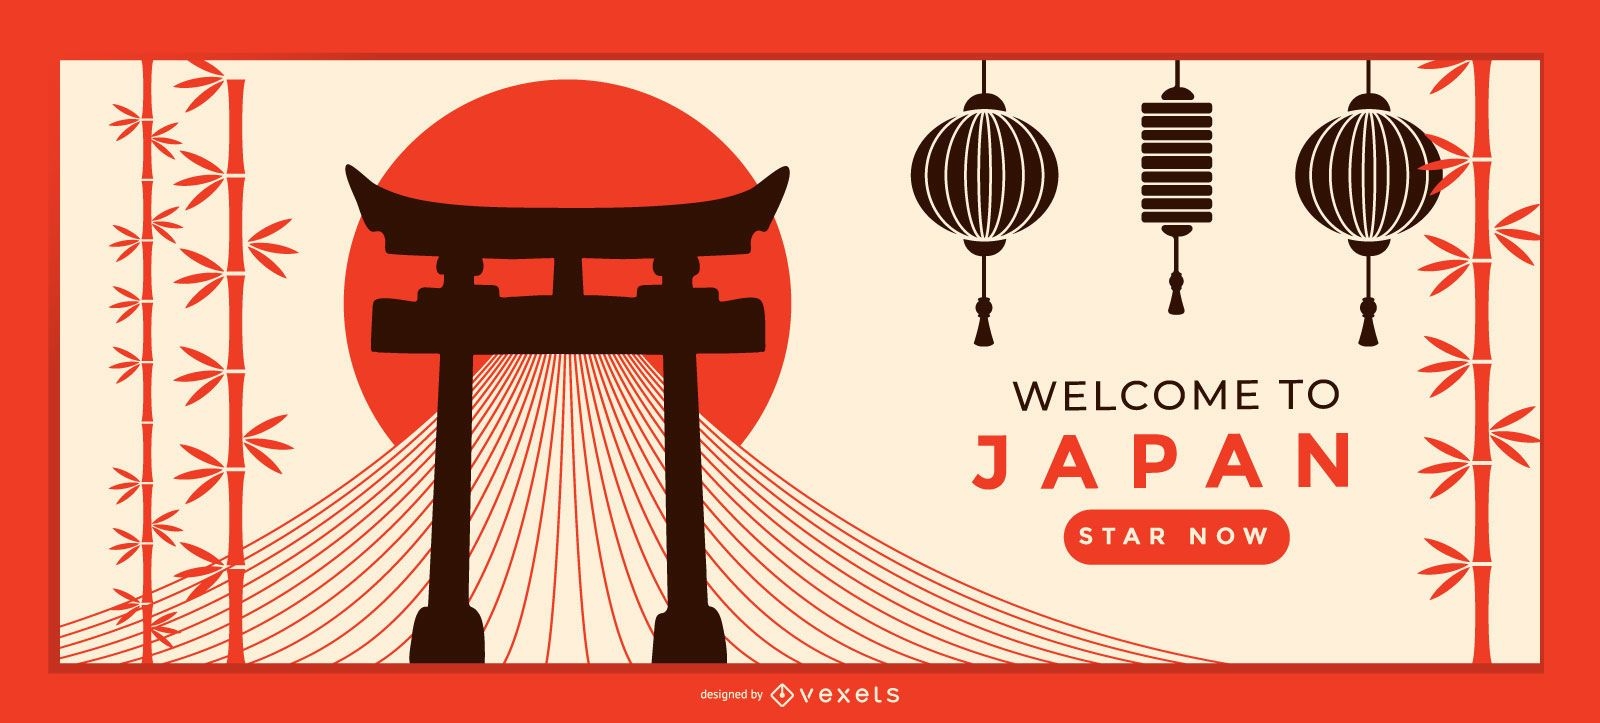 Modelo de página de destino de boas-vindas ao Japão